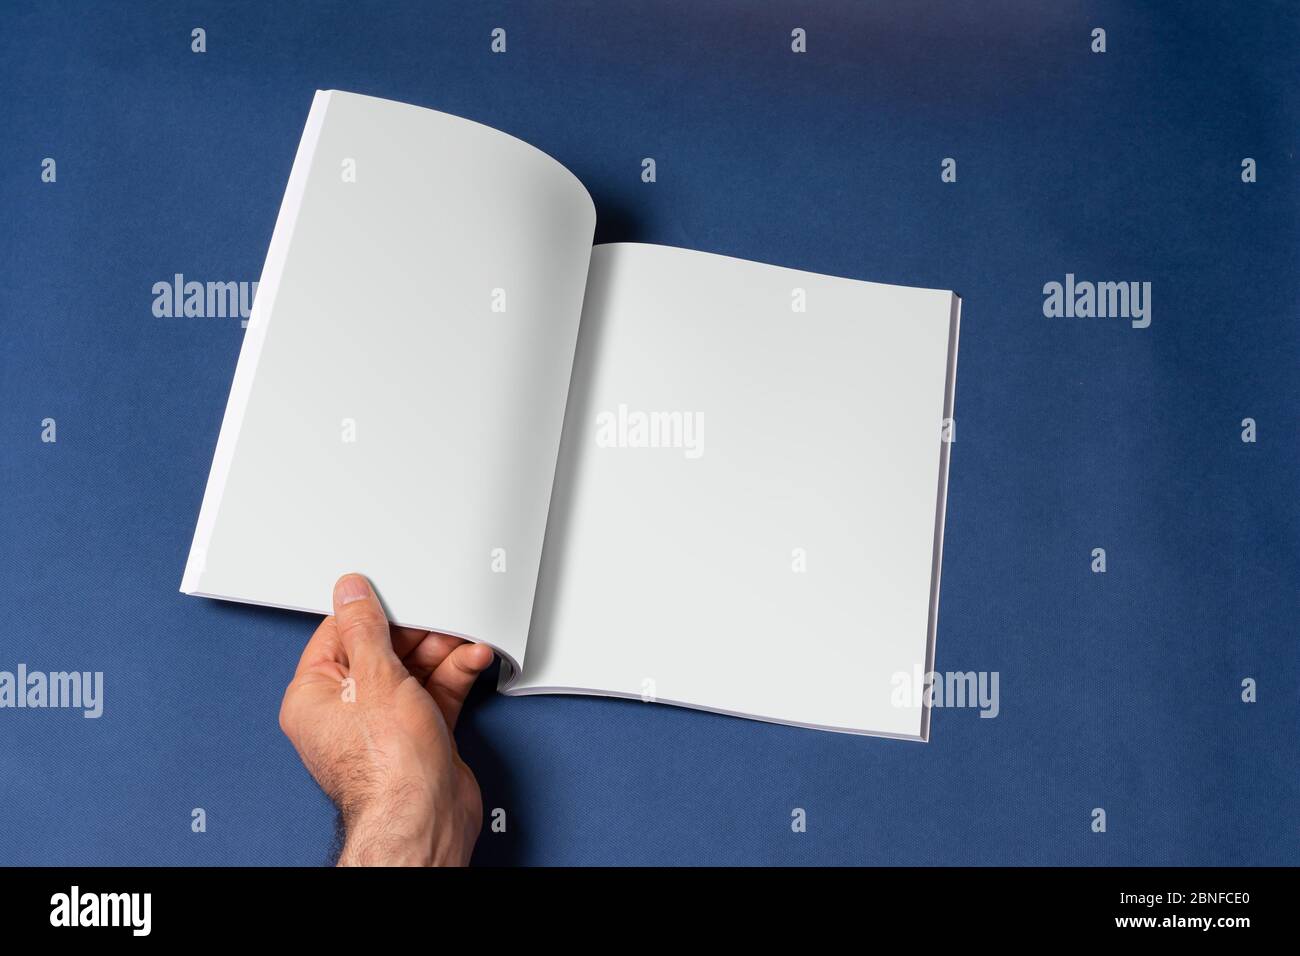 Männliche Hand öffnete einen Buch-Katalog auf blauem Hintergrund, Mock-up-Serie Vorlage bereit für Ihr Design, Seiten Auswahl Pfad enthalten Stockfoto